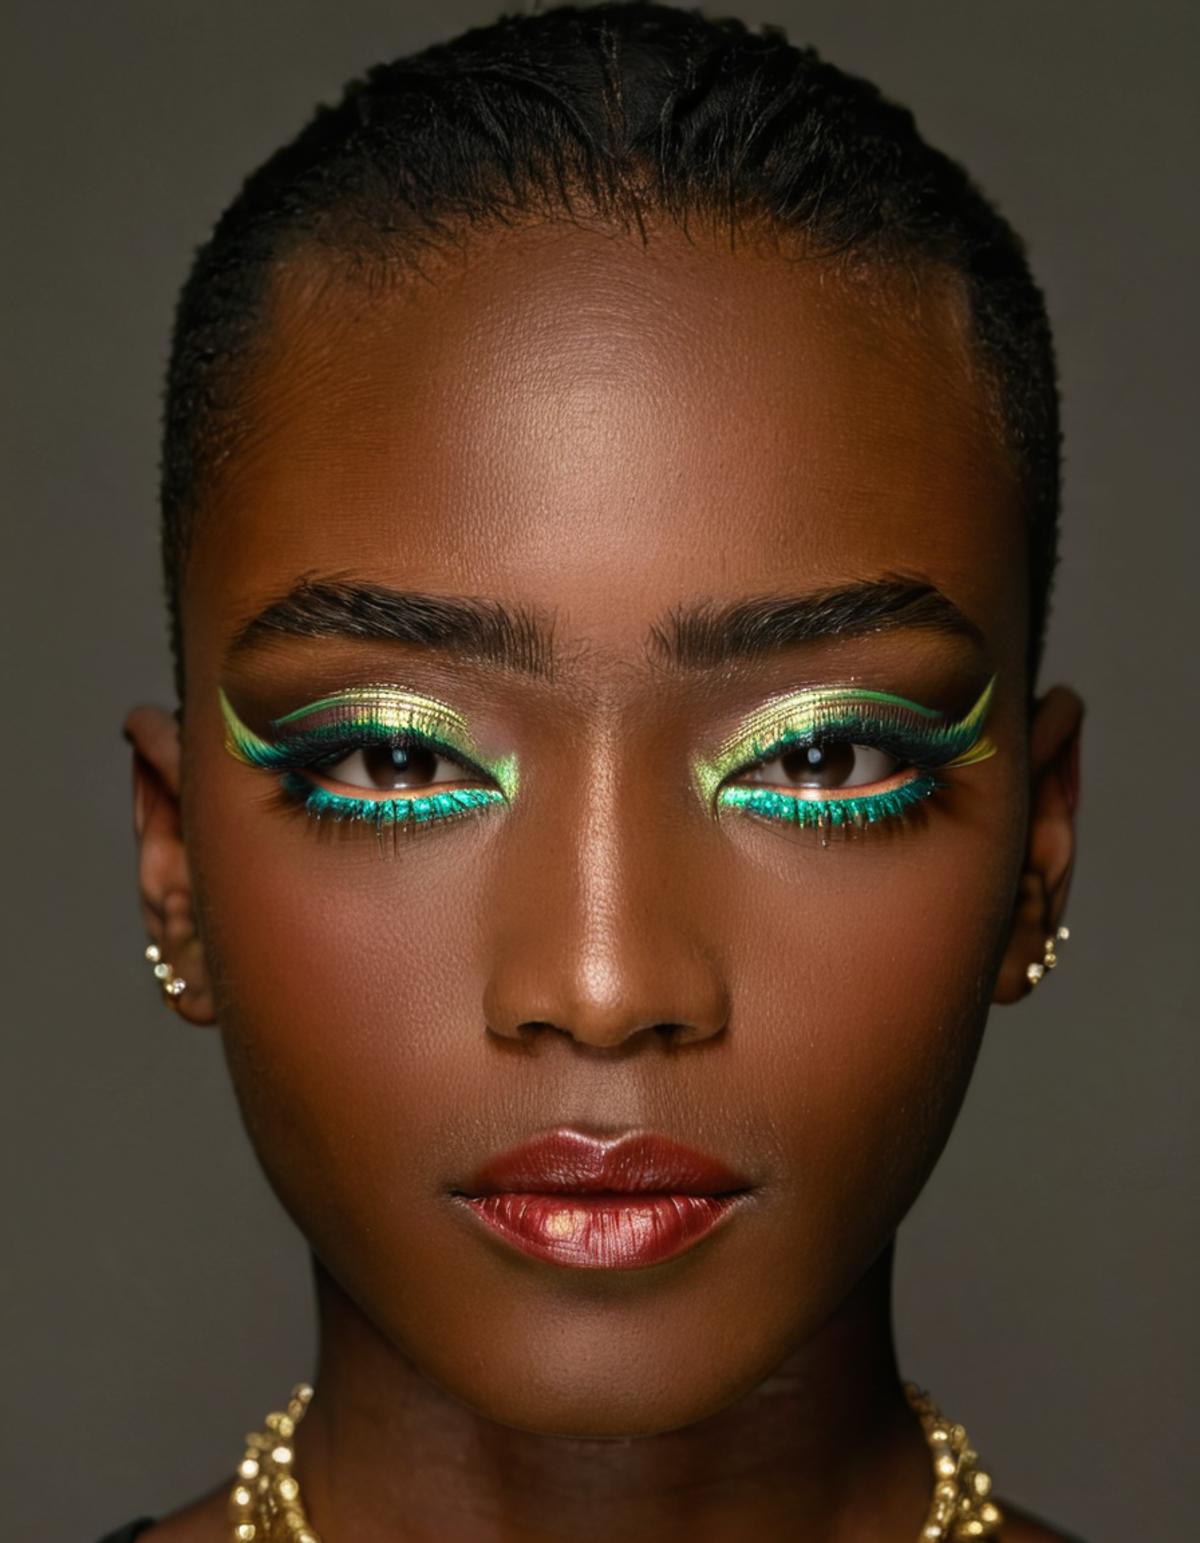 Modern Makeup XL image by futureflix